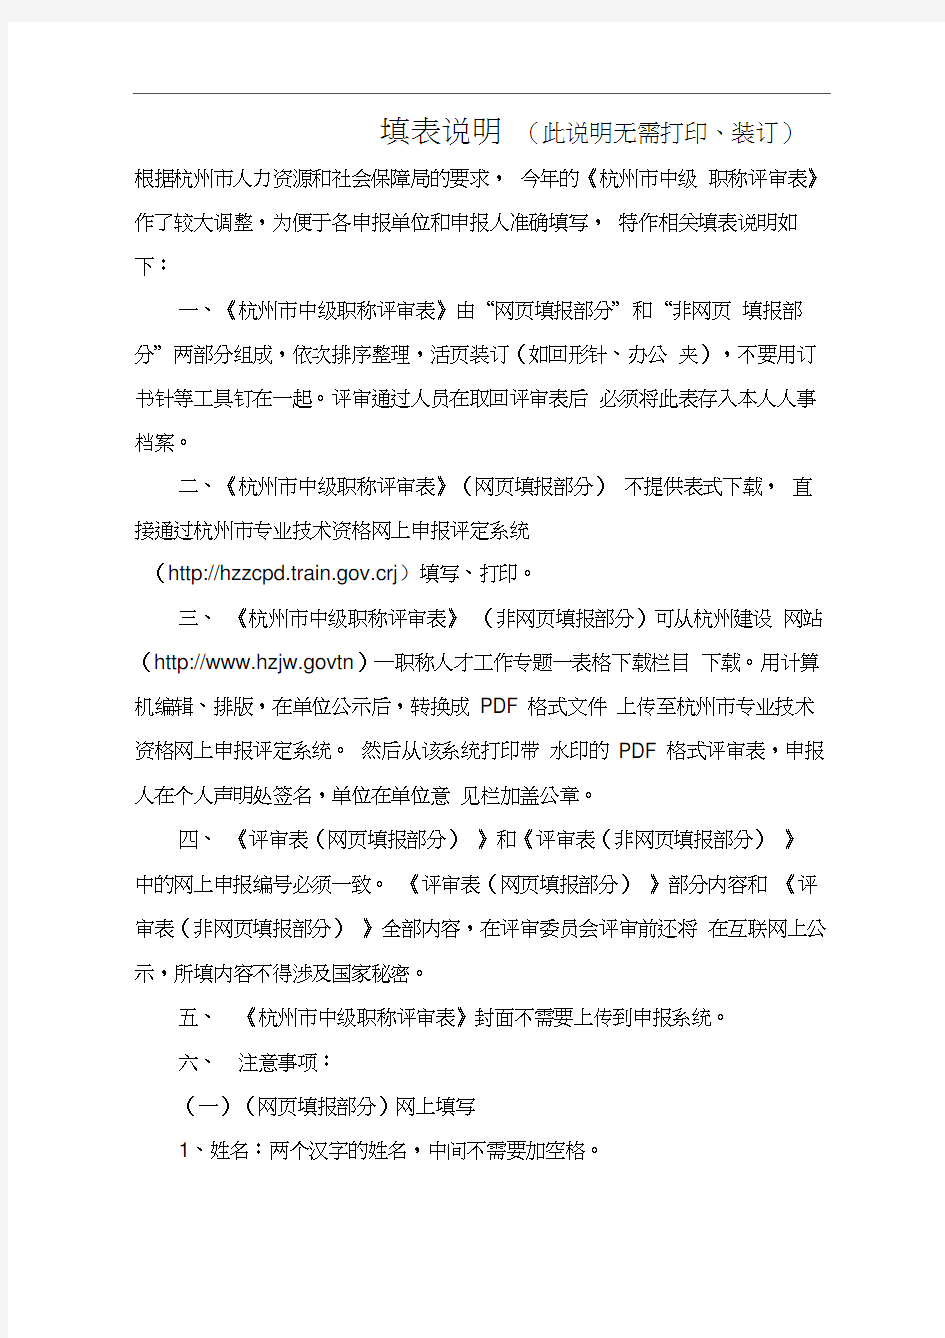 3《杭州市中级职称评审表—非网页填报部分》(评审表封面和填表说明)